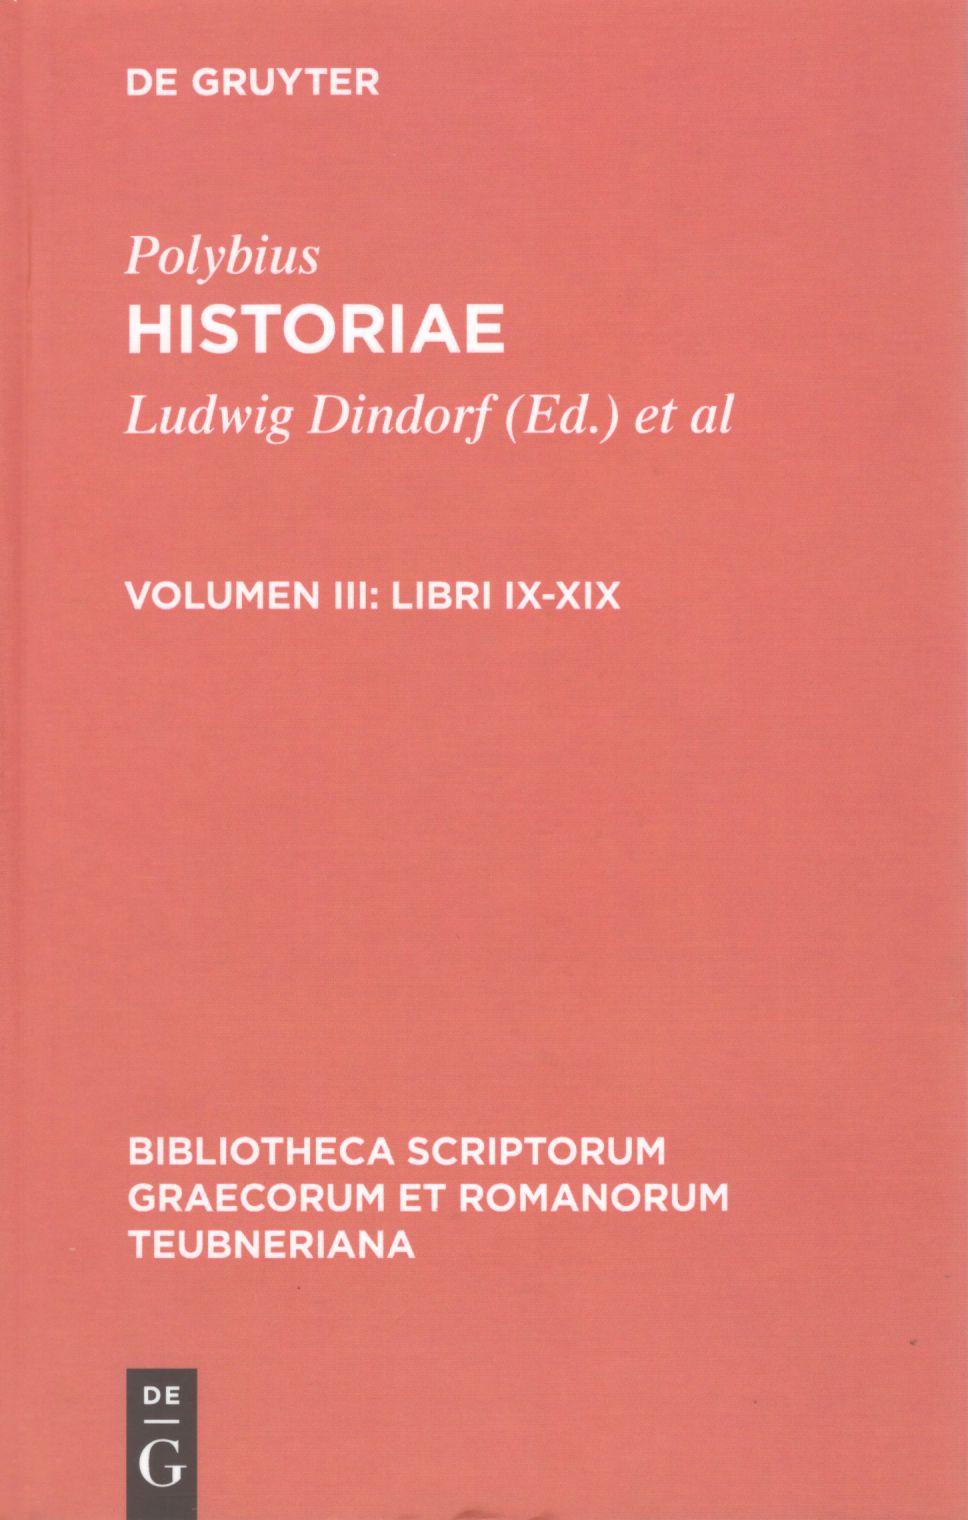 POLYBII HISTORIAE VOLUME III: LIBRI IX-XIX